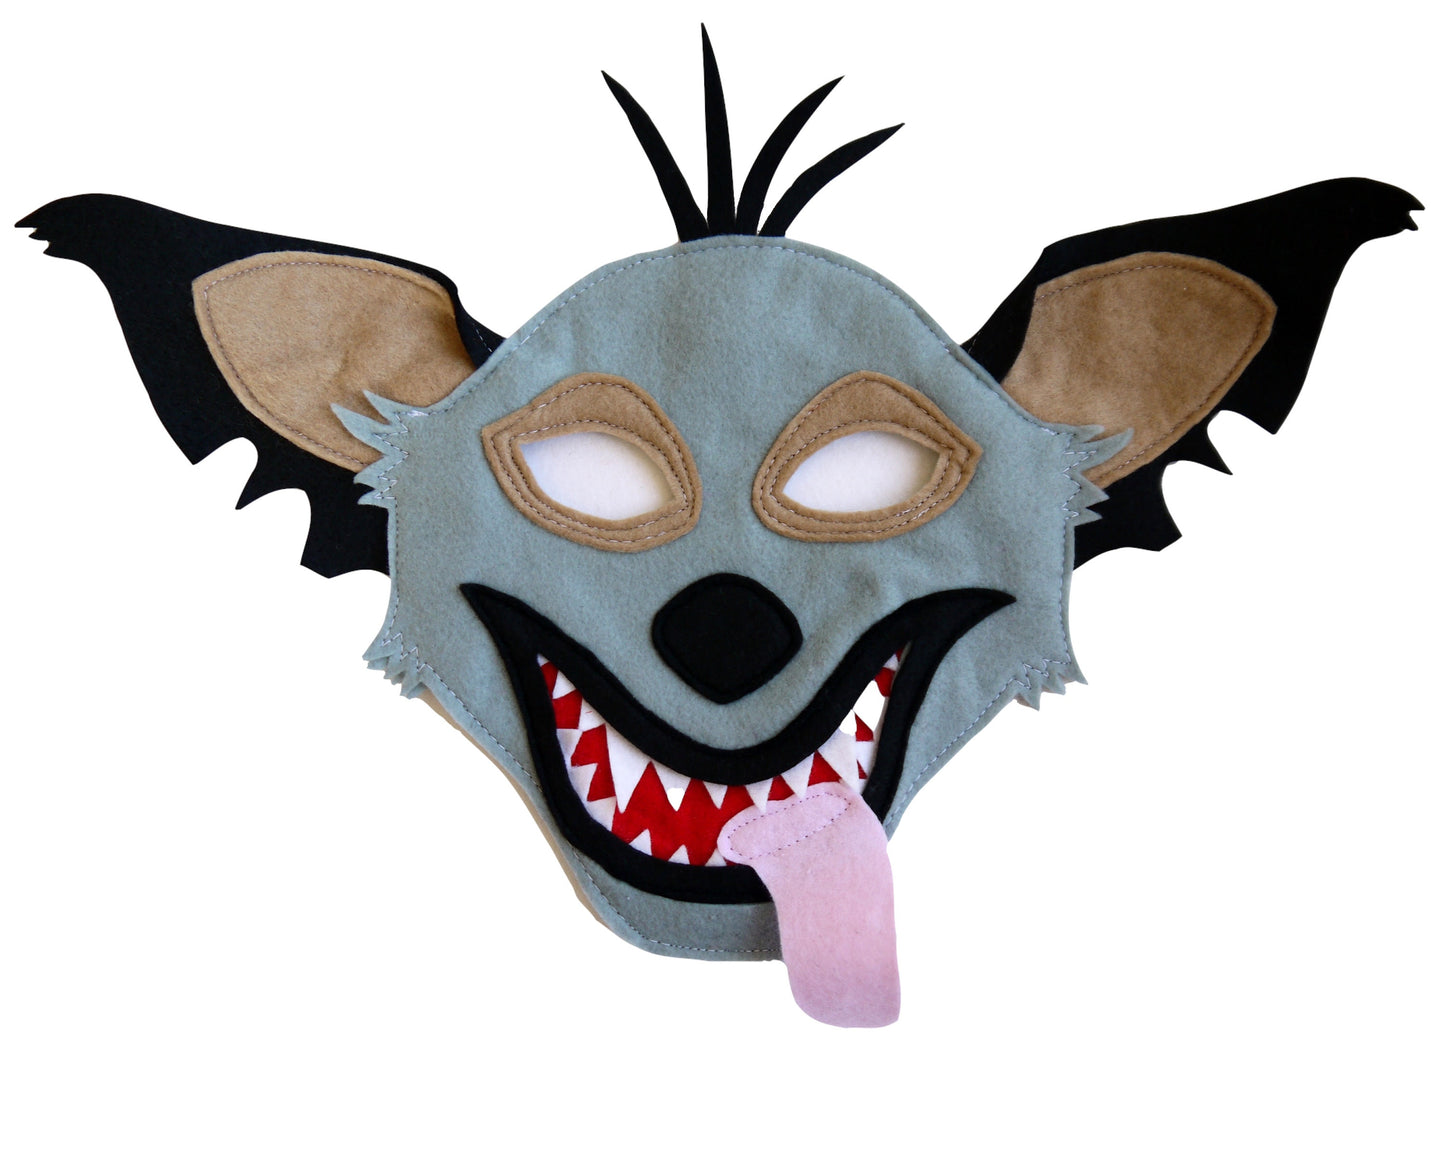 Hyena costume mask, world book day costume, kids or adults size Banzai, Shenzi and Ed felt fabric, theatre production, dress up gift